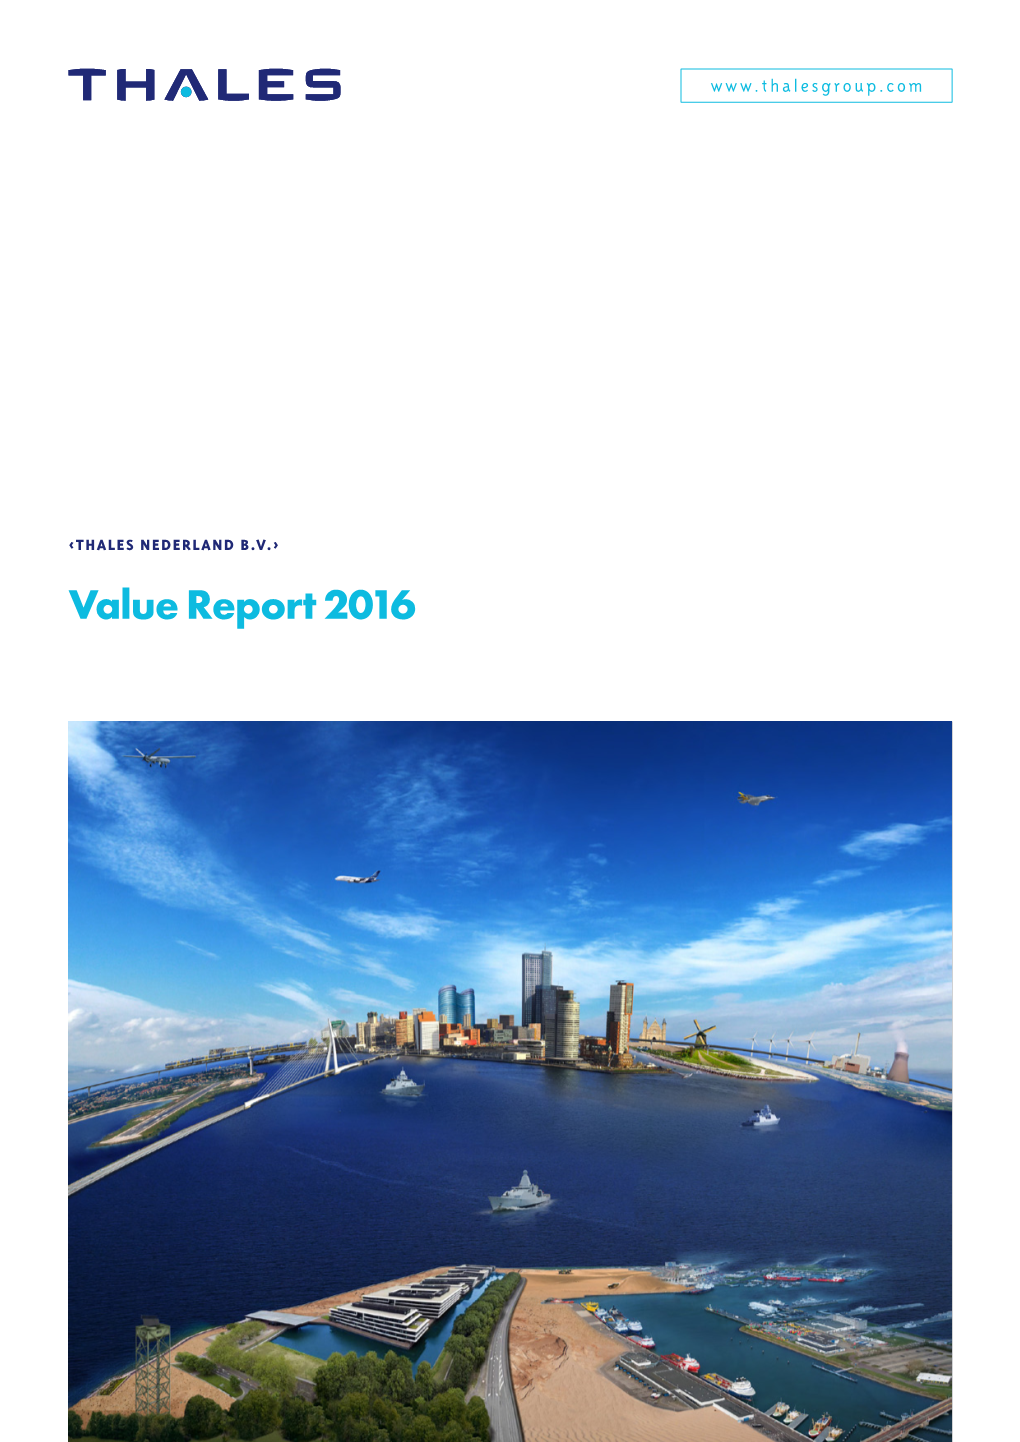 Thales Nederland BV 2016 Value Report Version 30-06-2017